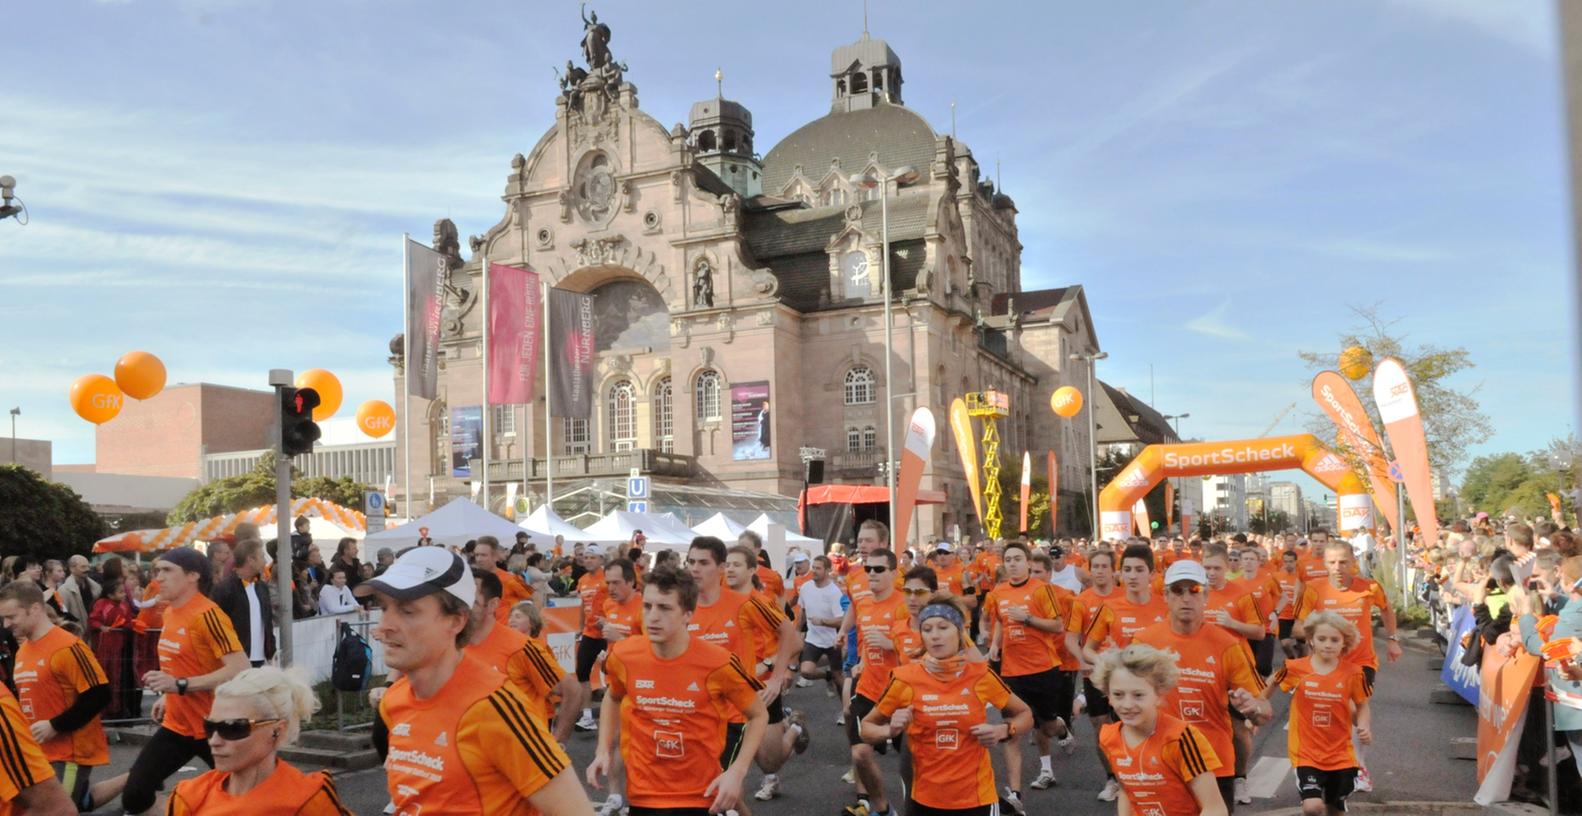 Traumwetter, traumhafte Kulisse, autofreie Laufstrecke in der City: Die meisten der knapp 8000 Läufer hatten Spaß beim Stadtlauf in Nürnberg.